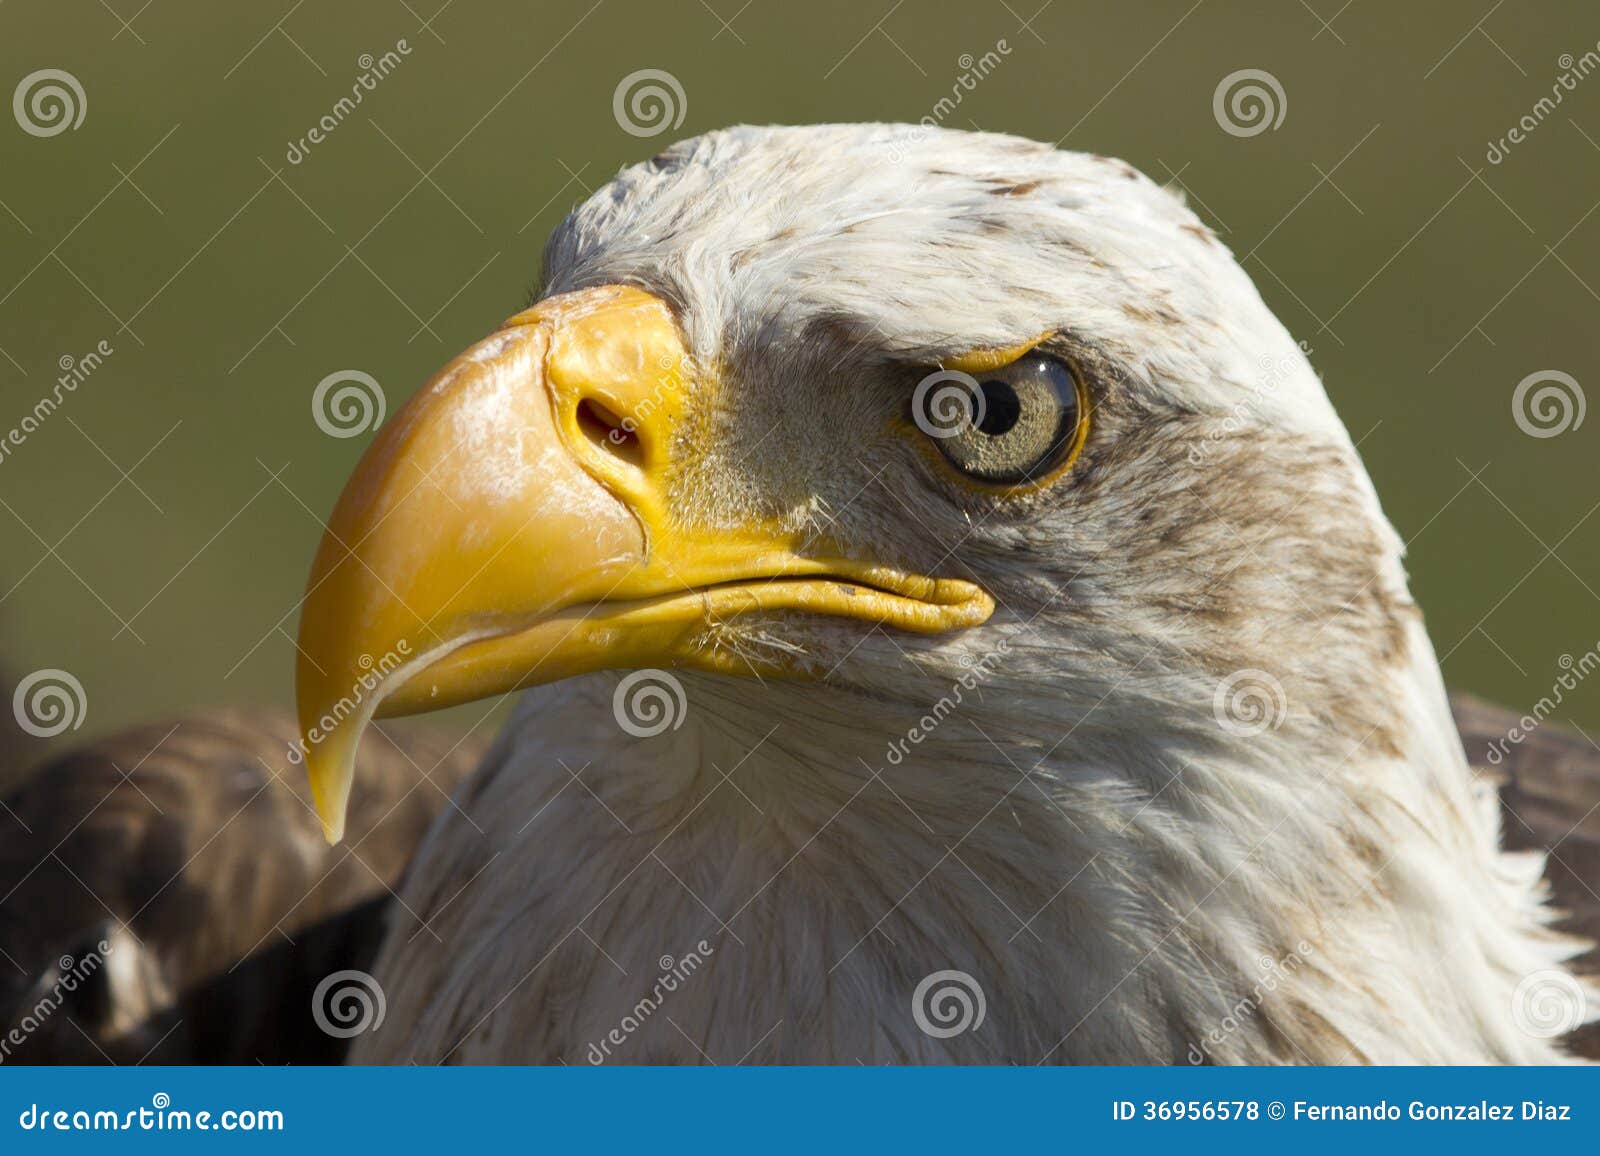 royal eagle